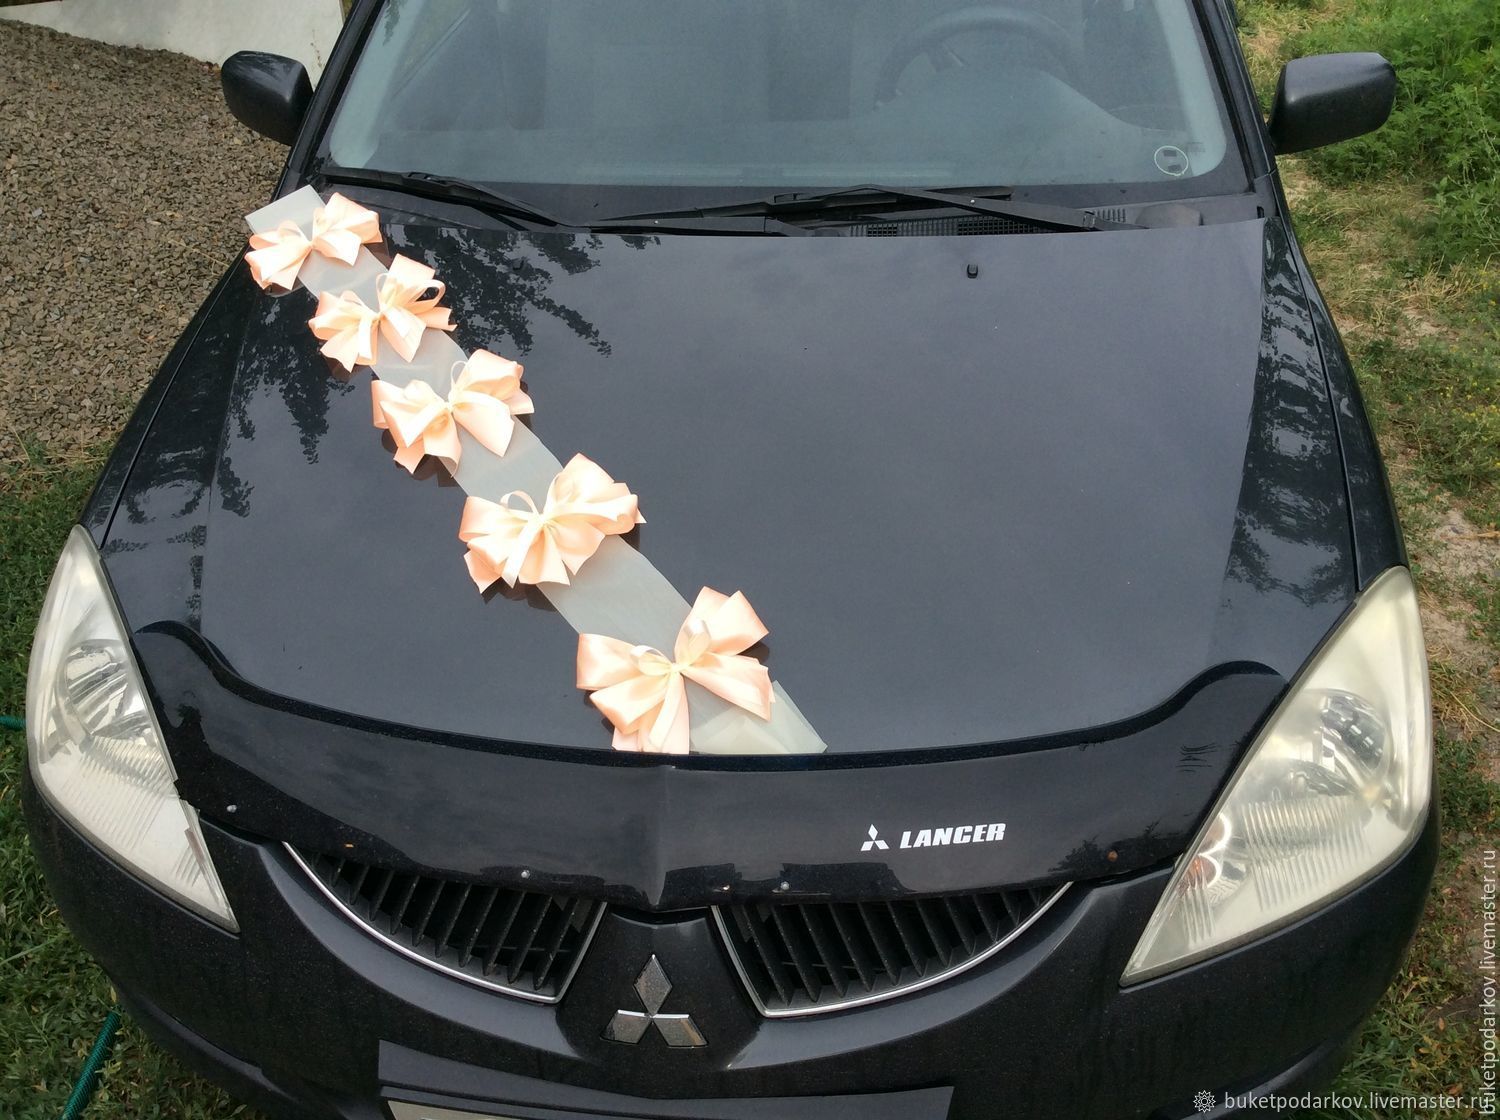 Свадебные украшения на авто, ленты с цветами на капот машины на свадьбу, выписку